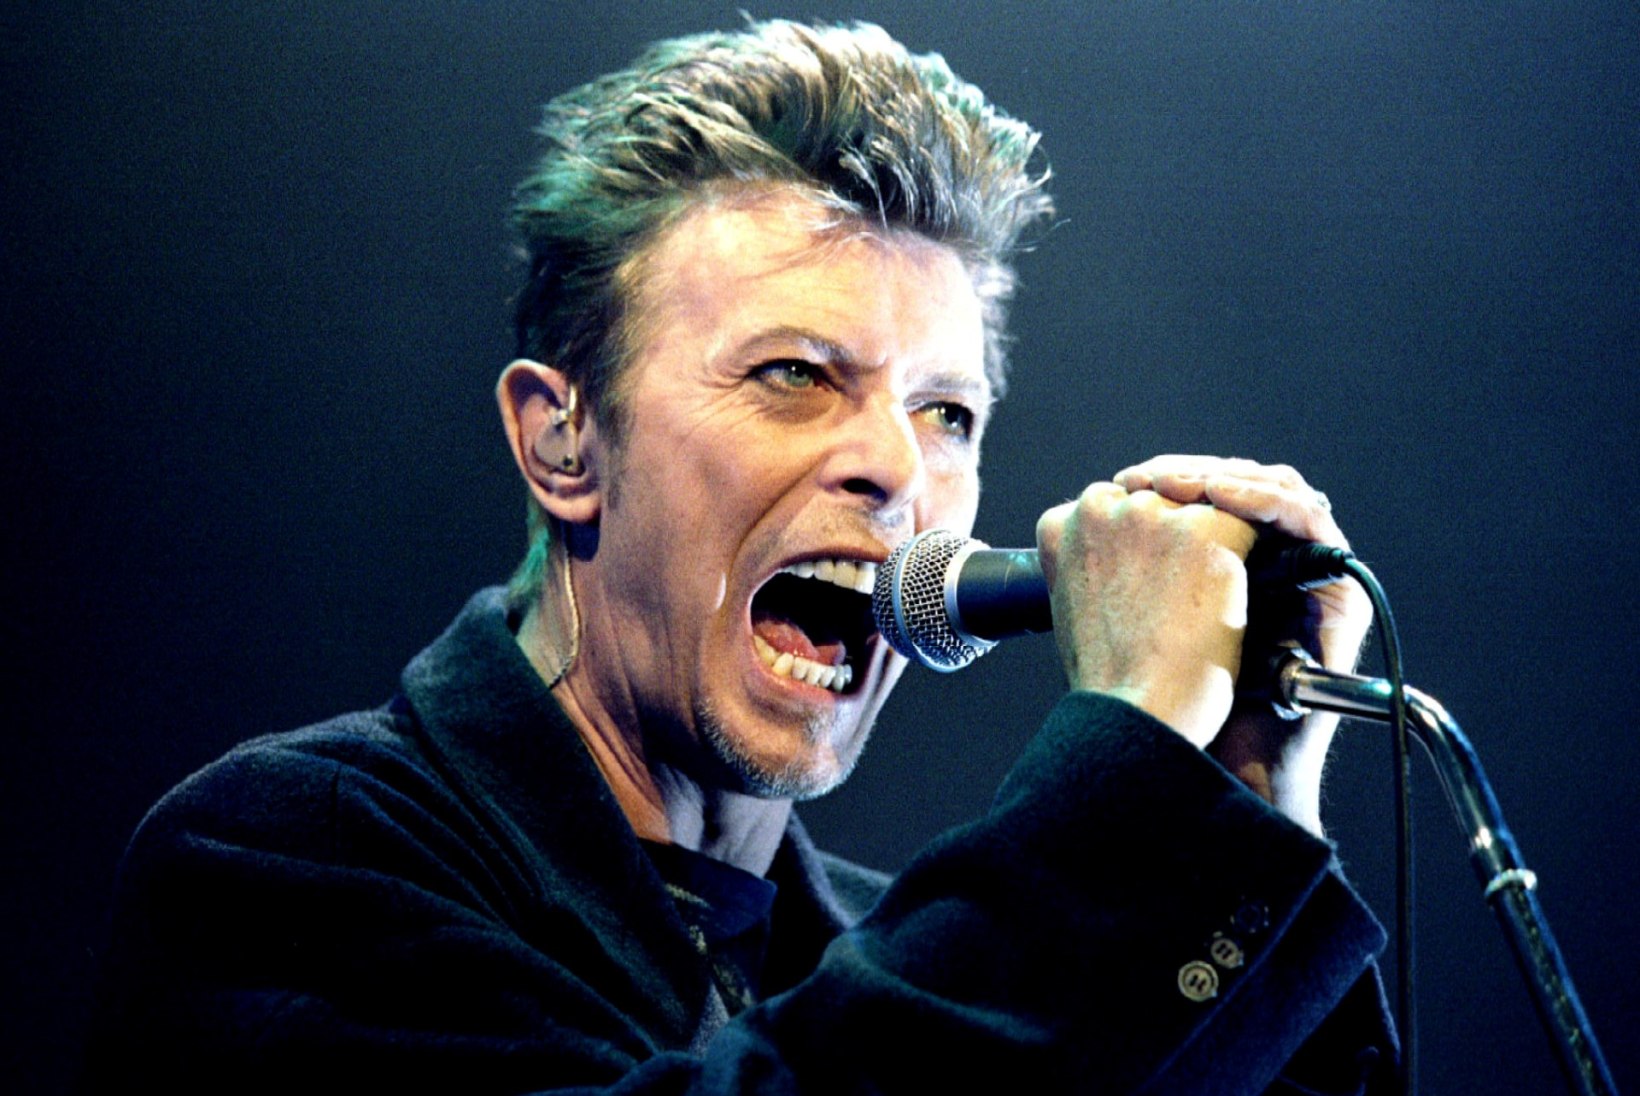 Seni vaid ühe Grammy võitnud Bowie kullati postuumselt auhindadega üle